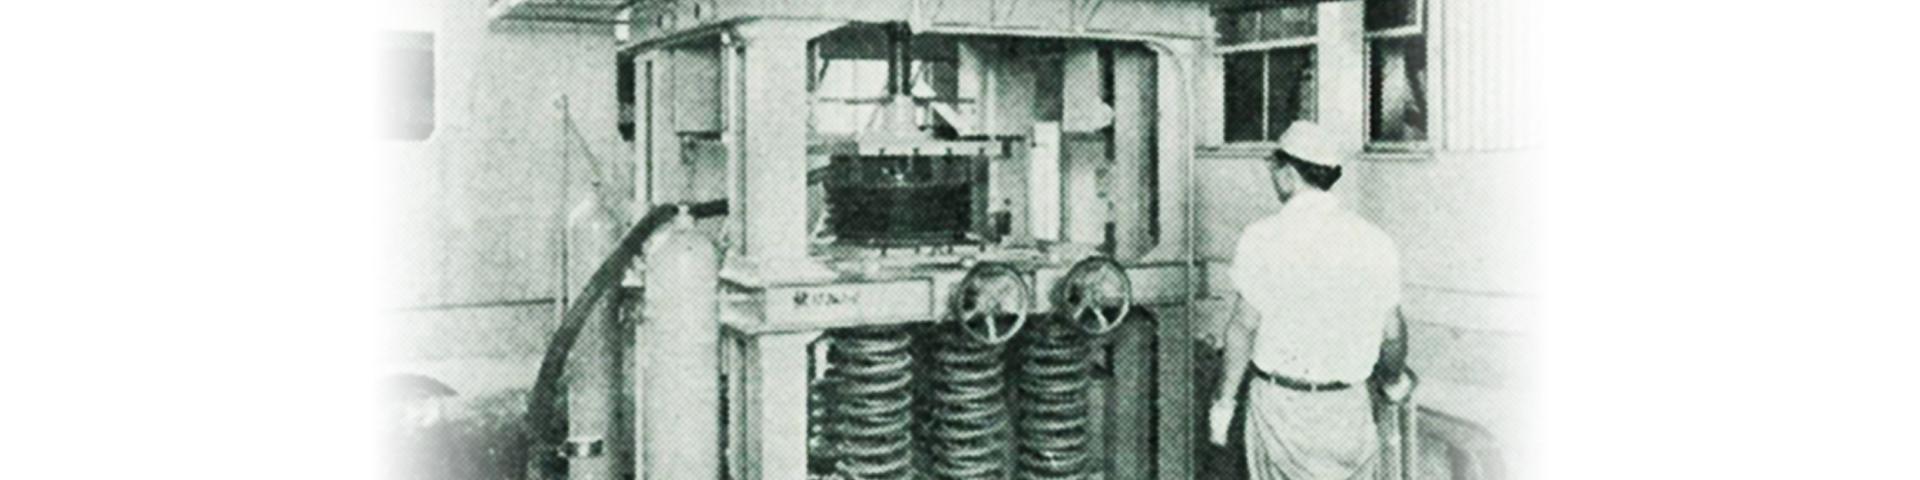 1958年 電線から培った製品技術